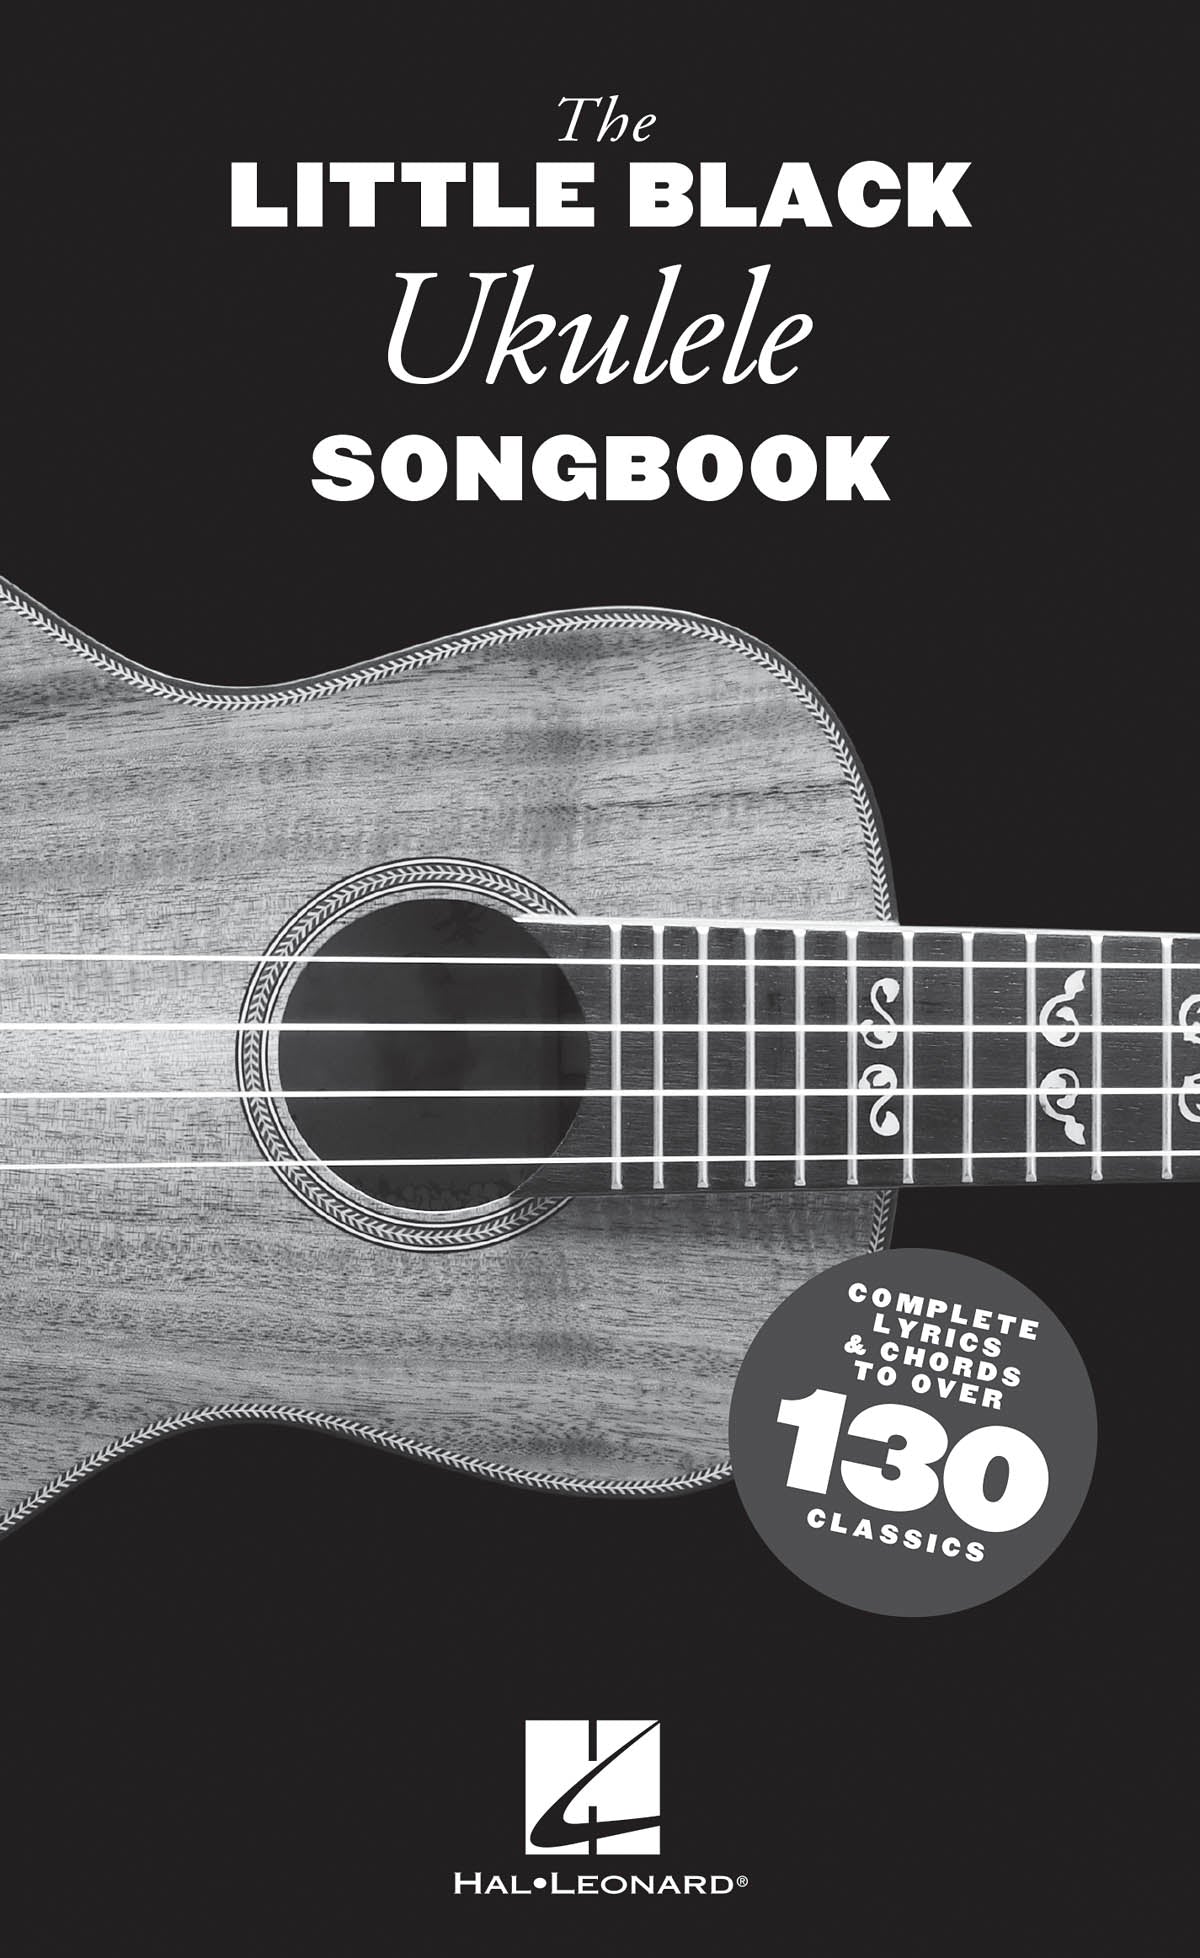 Image 1 of The Little Black Ukulele Songbook - SKU# 49-287157 : Product Type Media : Elderly Instruments